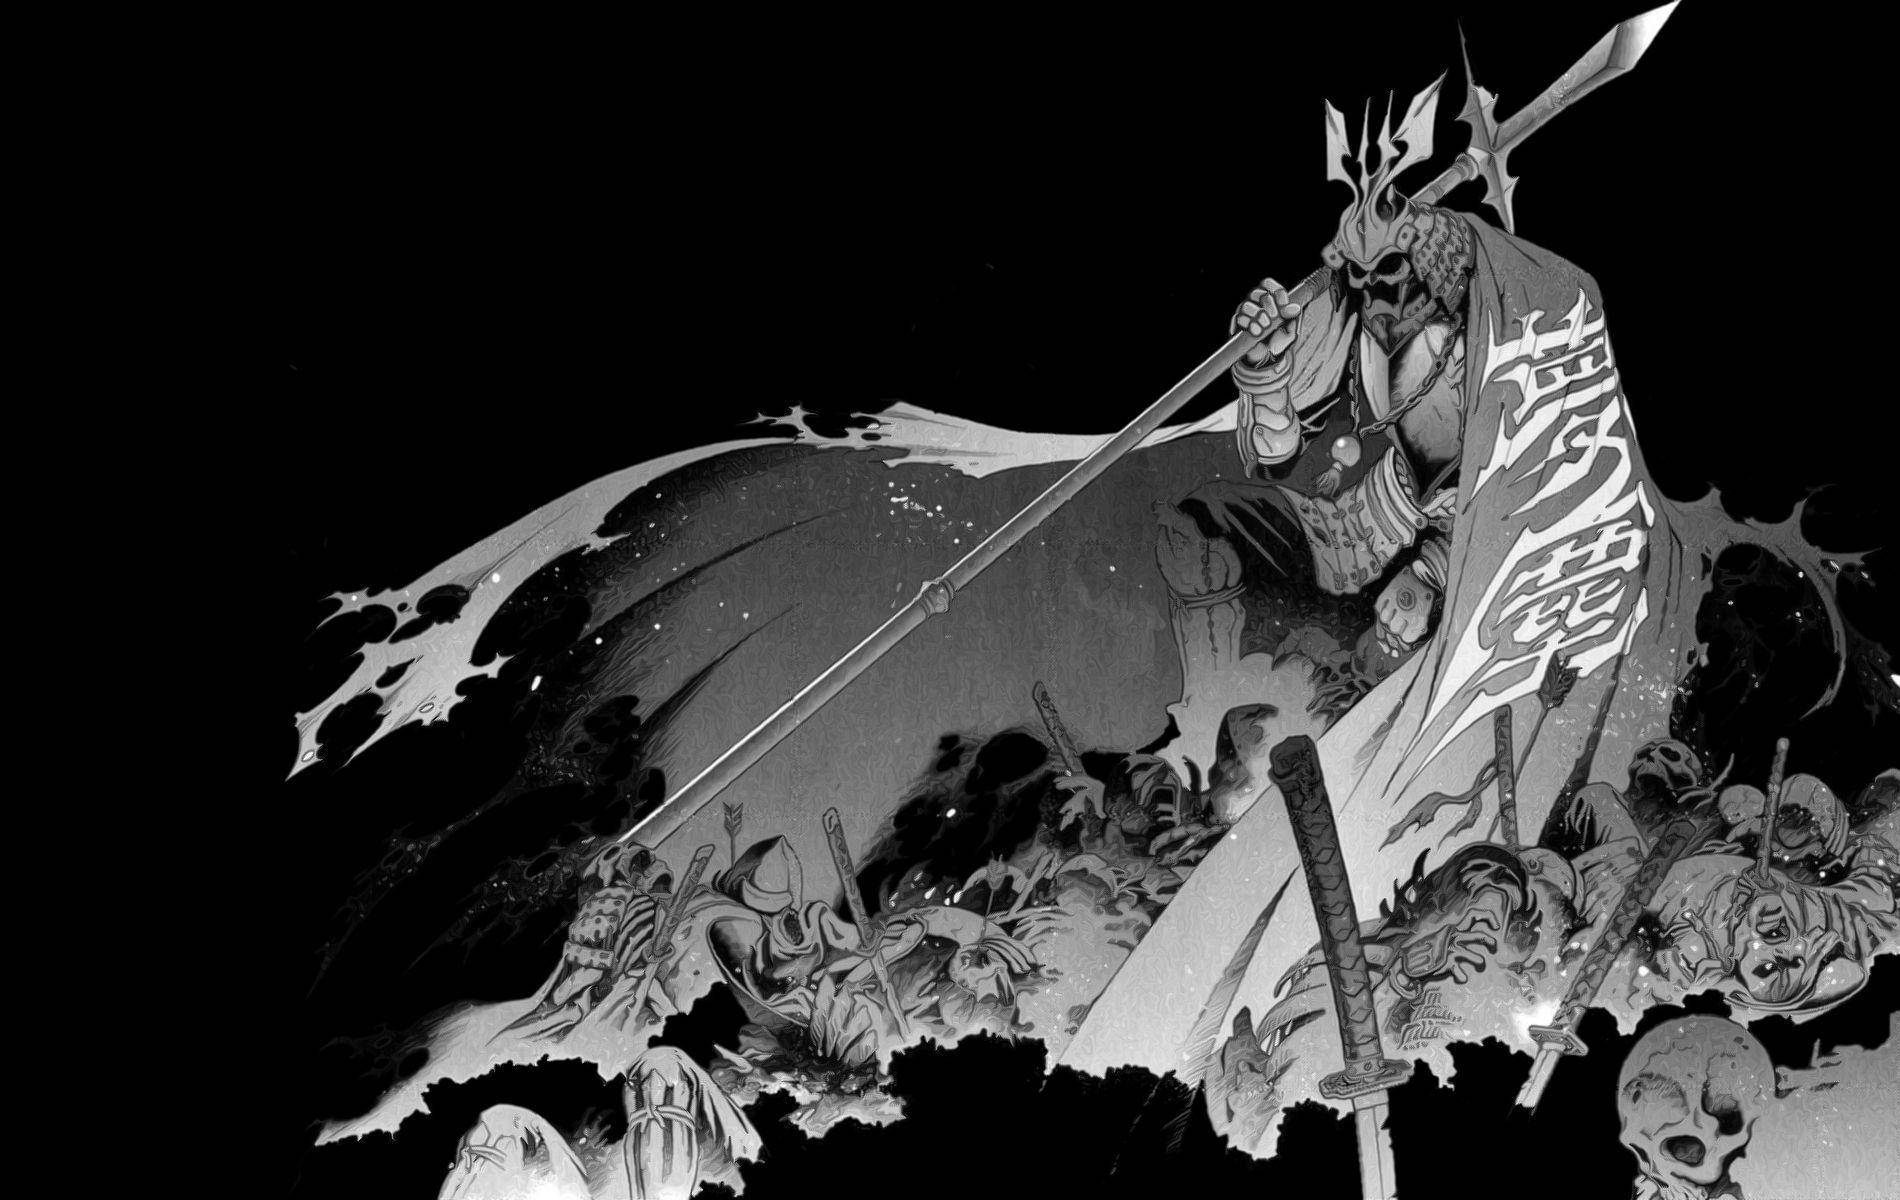 En samurai står på et tag, sværd trukket og klar til at kæmpe. Wallpaper